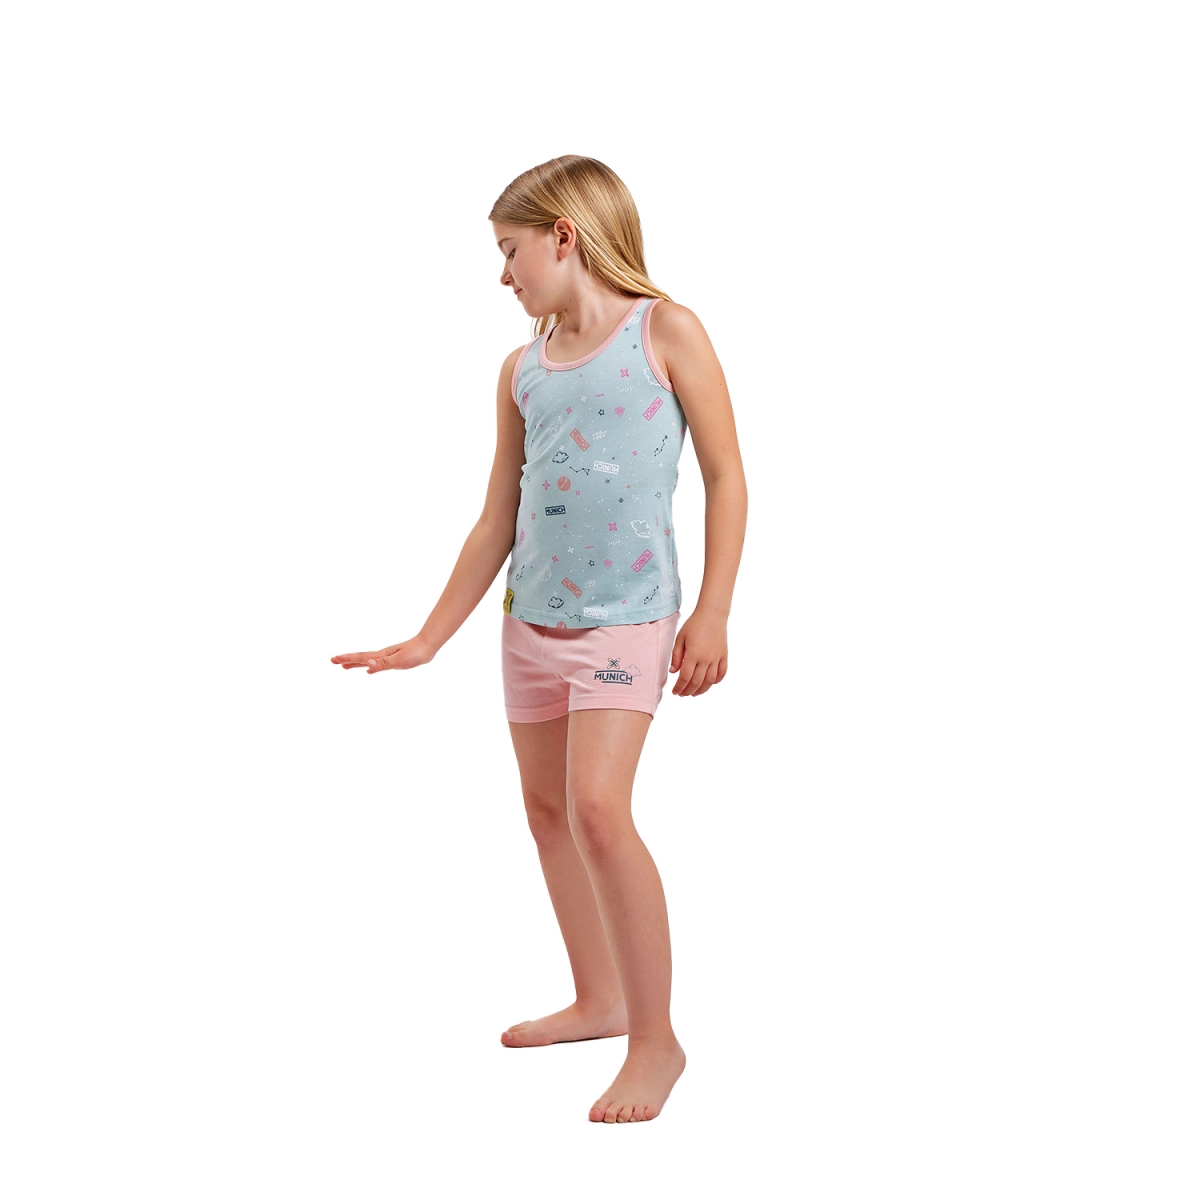 Pijama de tirantes y cuello redondo Munich DH1200 niña Talla: 10 AÑOS Color: Multicolor DH1200.10 AÑOS